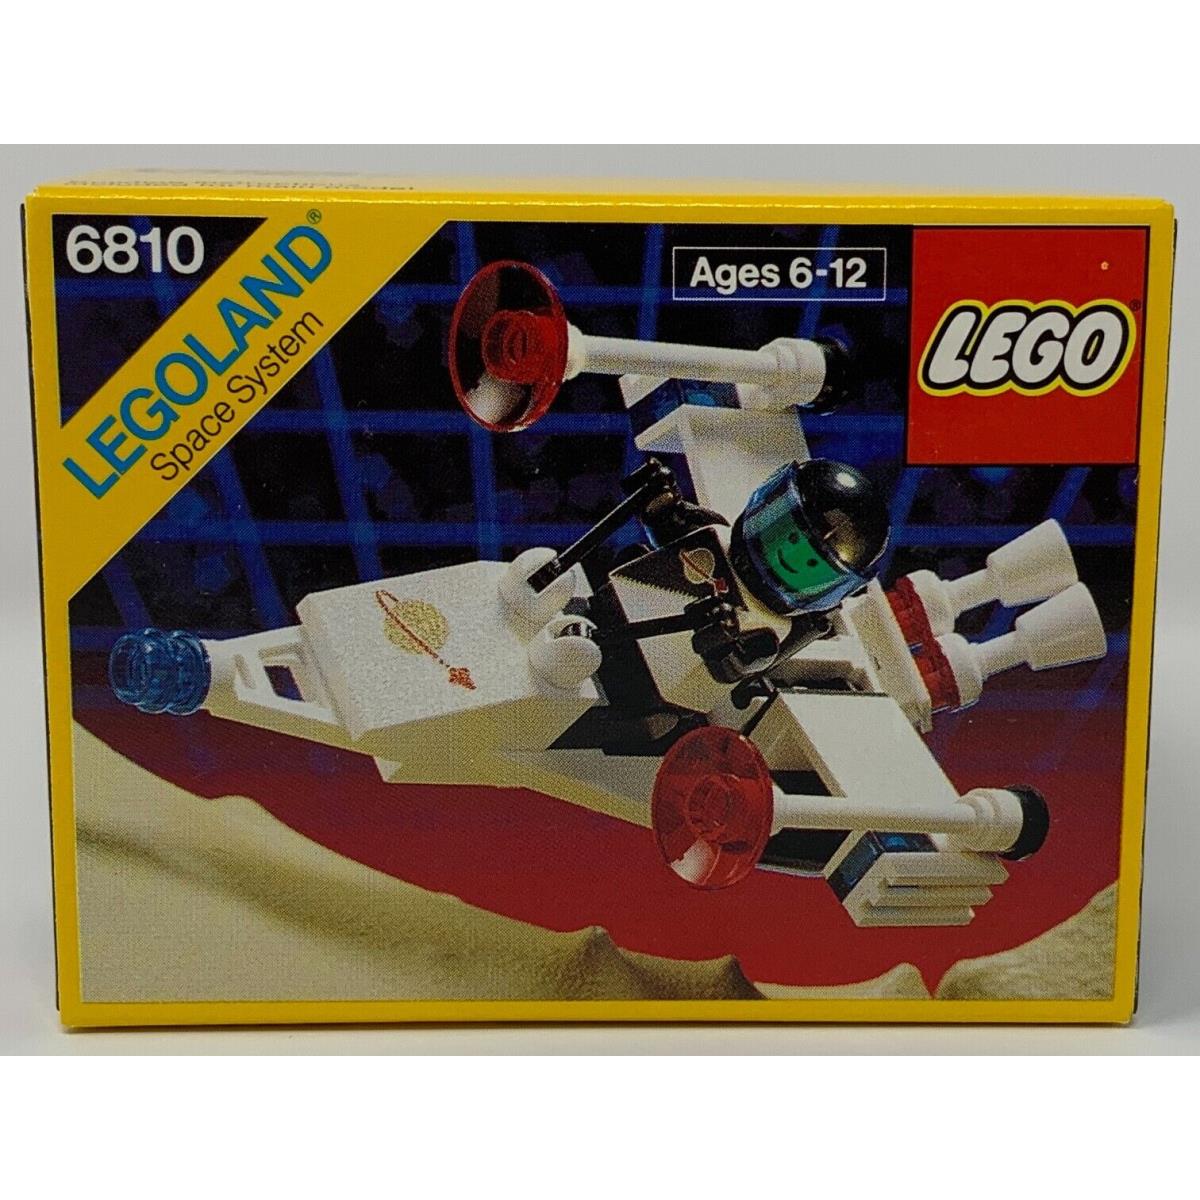 Lego 6810 Laser Ranger 1989